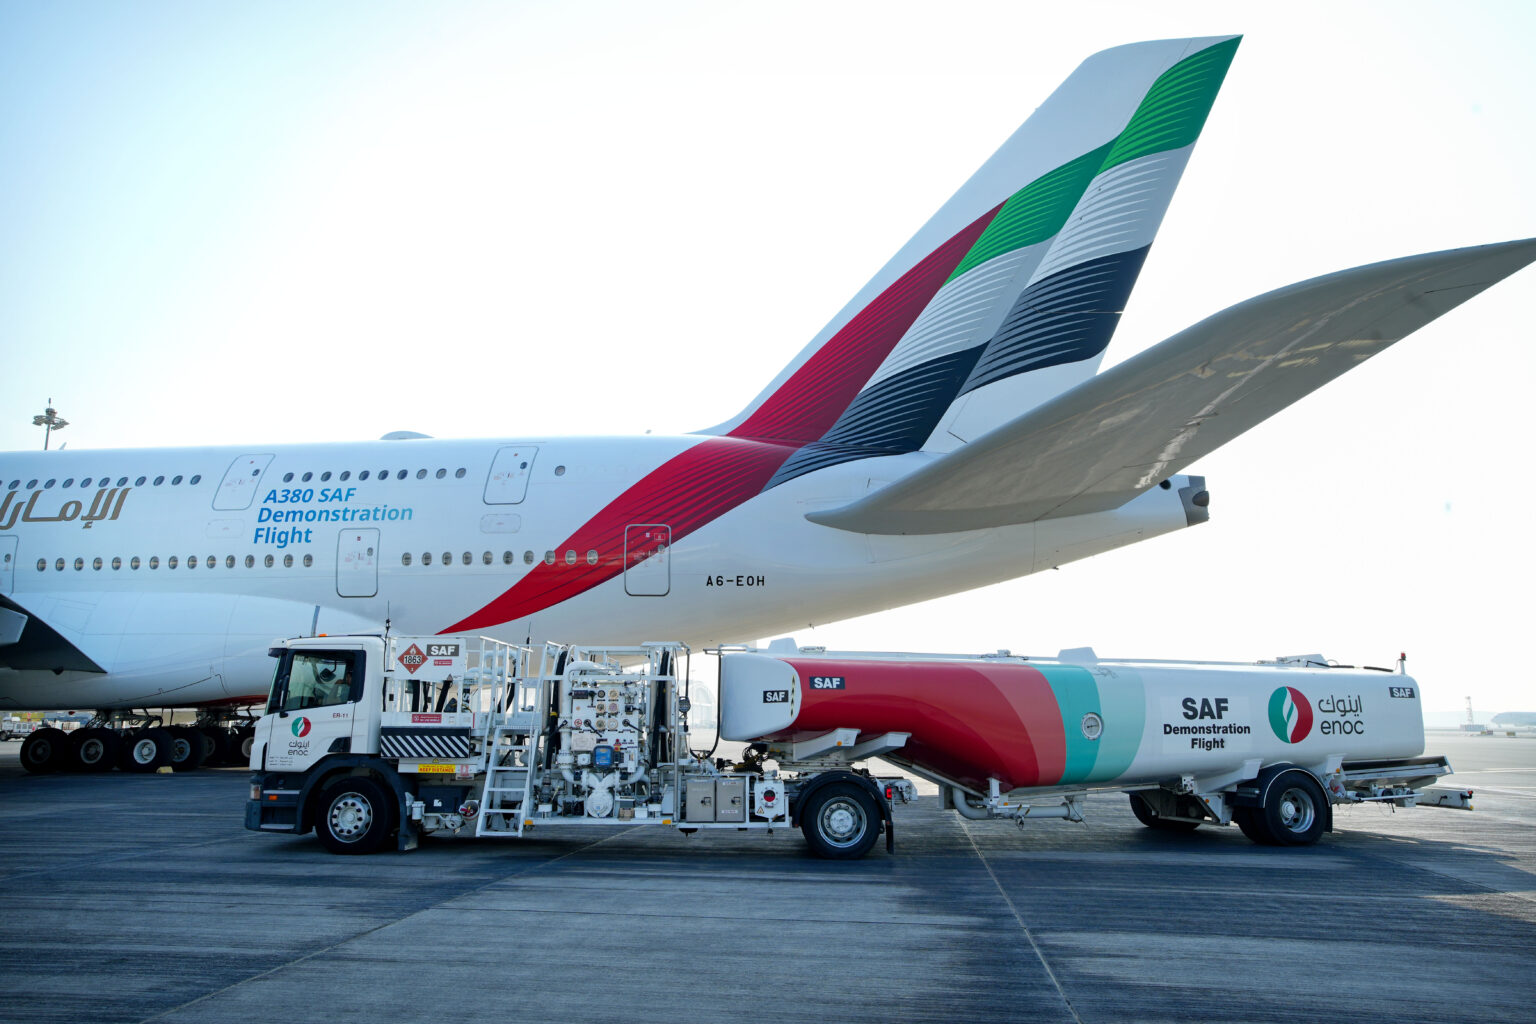 paliwo lotnicze saf w emirates